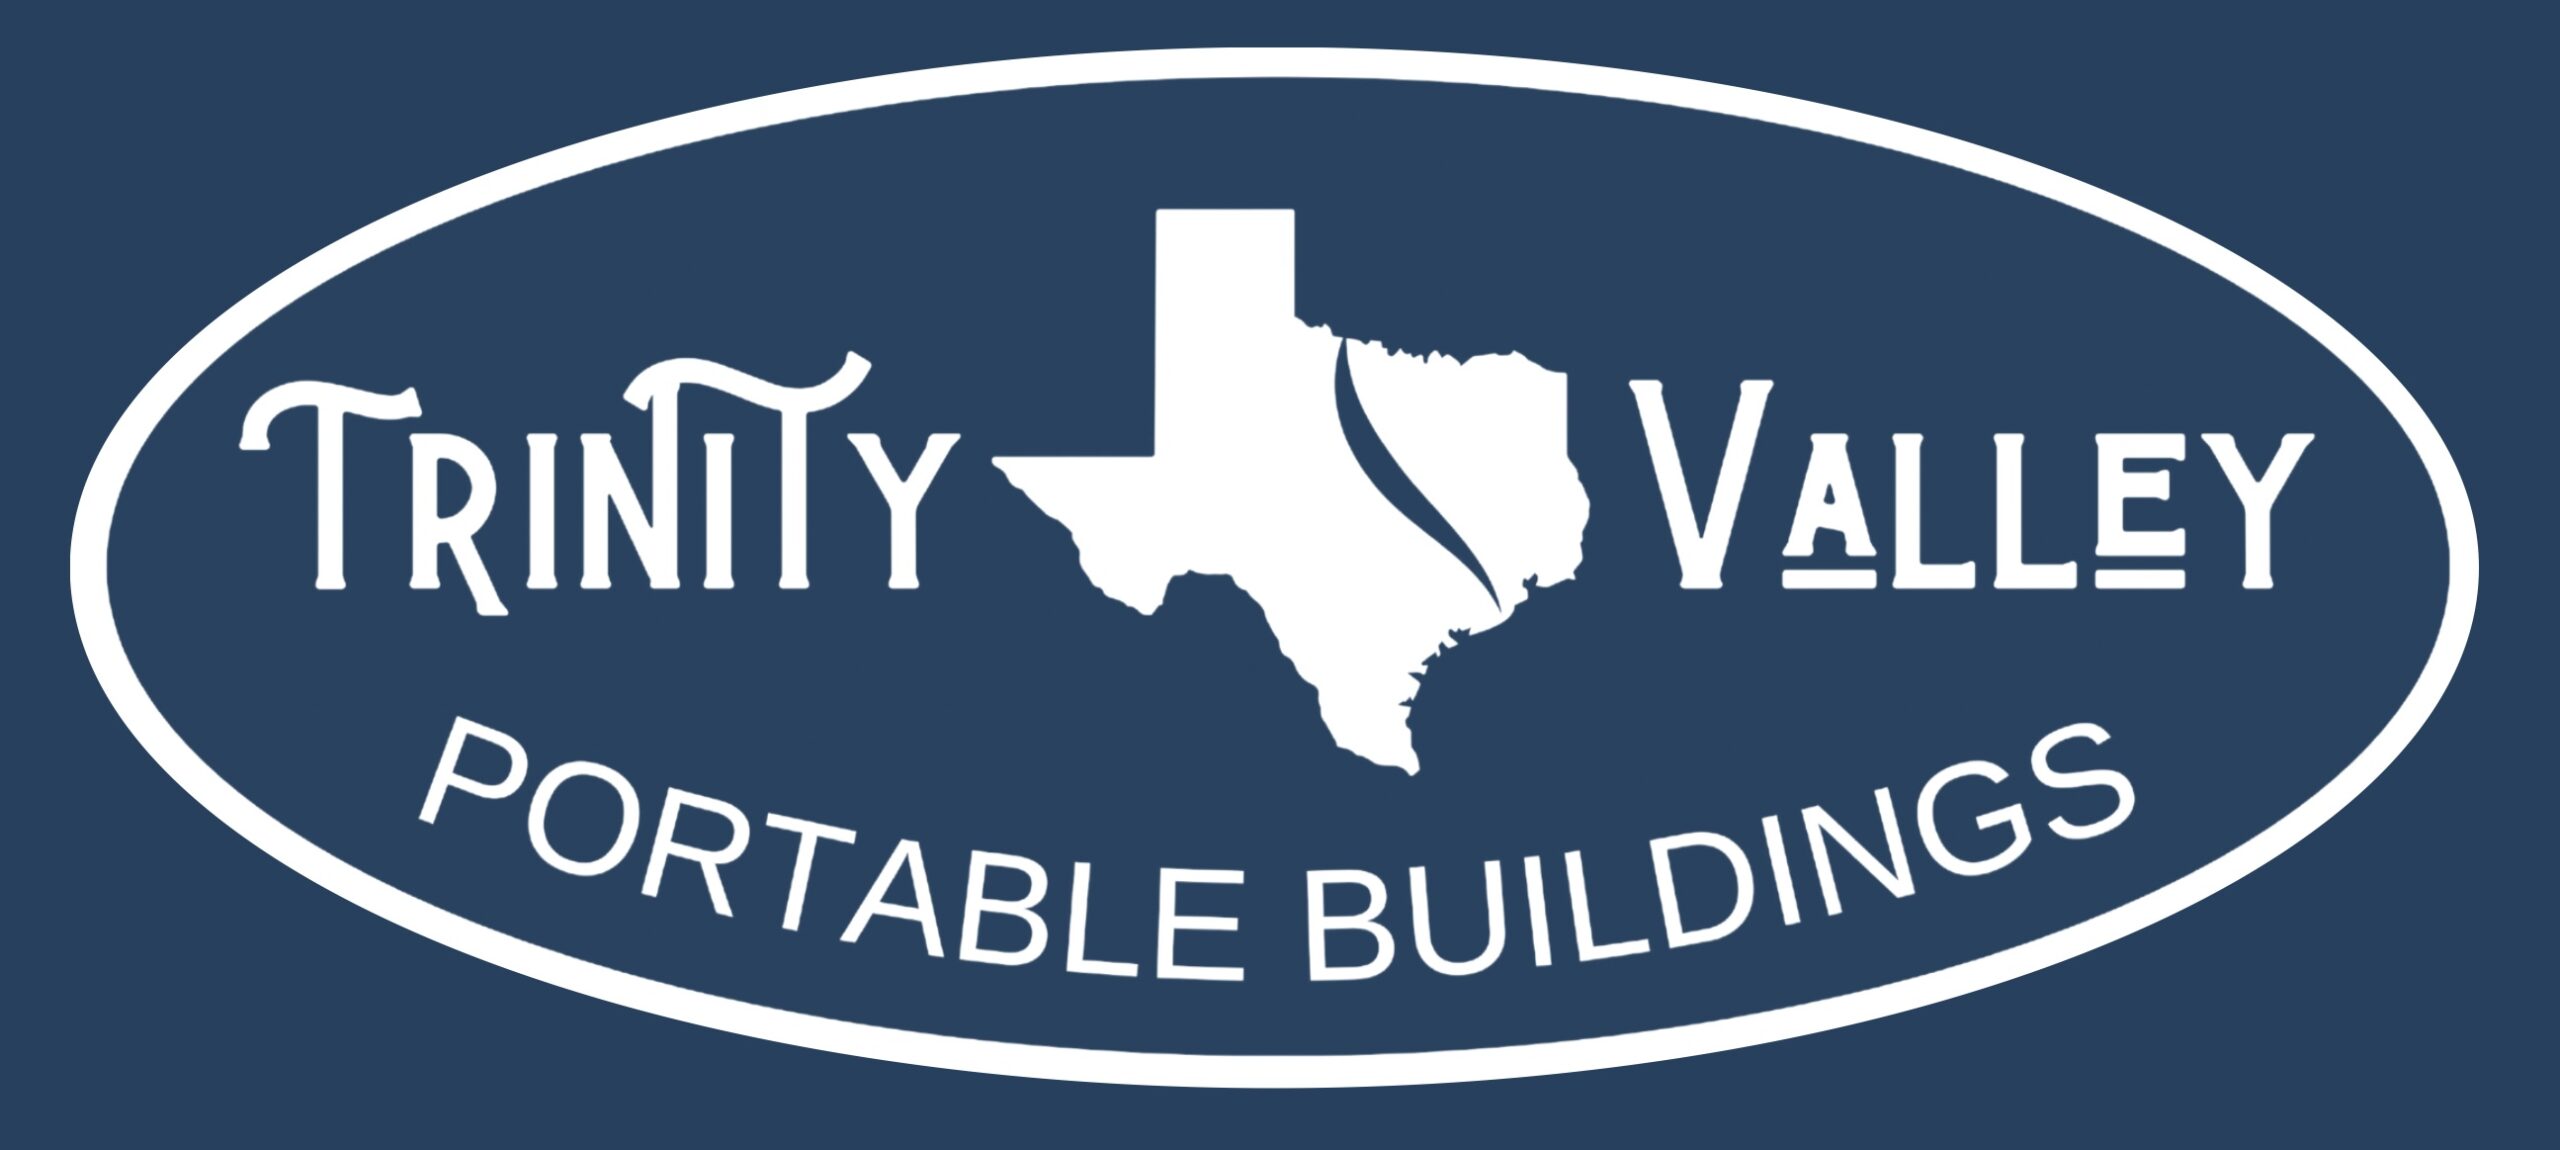 Trinity Valley Portable Buildings